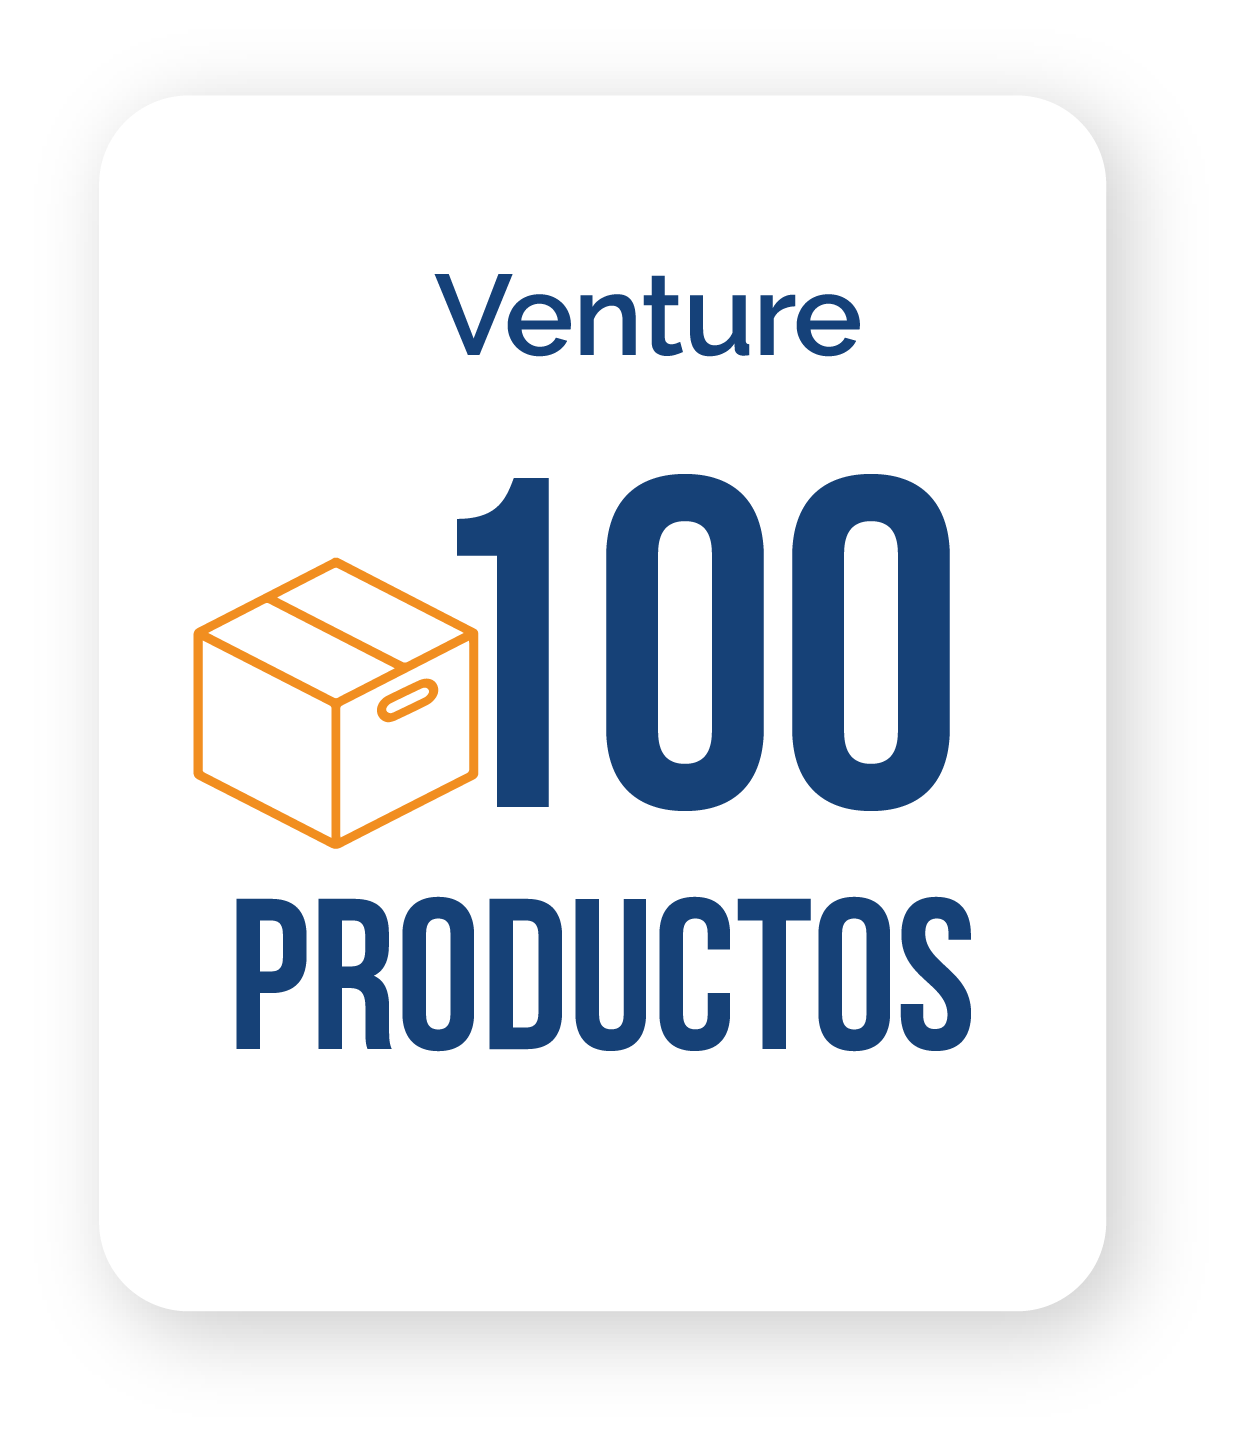 Un logo para venture 100 productos con una caja.